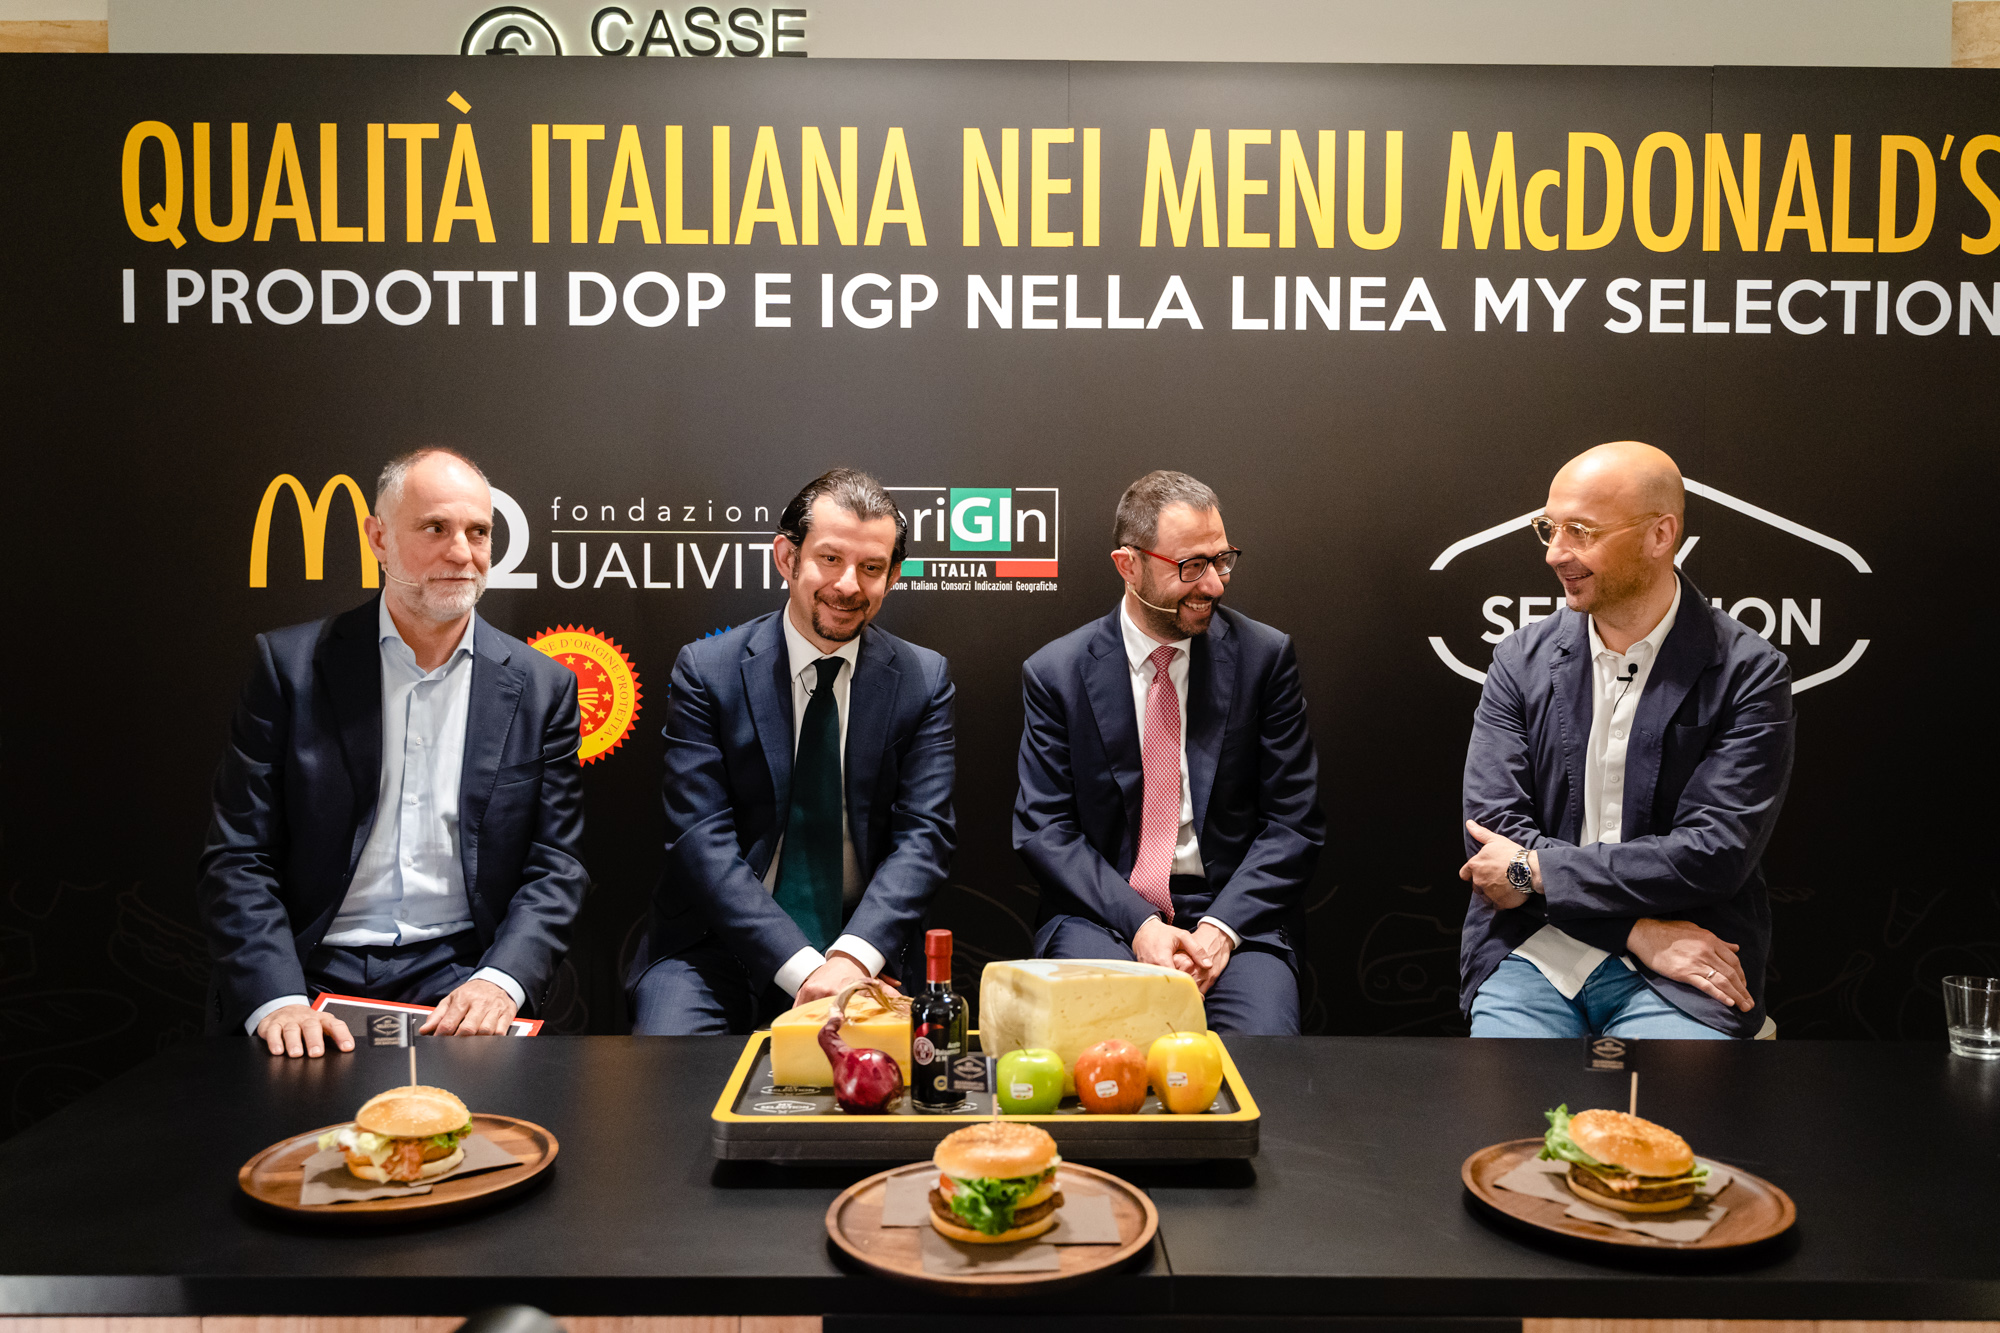 McDonald’s – Qualità italiana nei menù McDonald’s: i prodotti DOP IGP nella linea My Selection